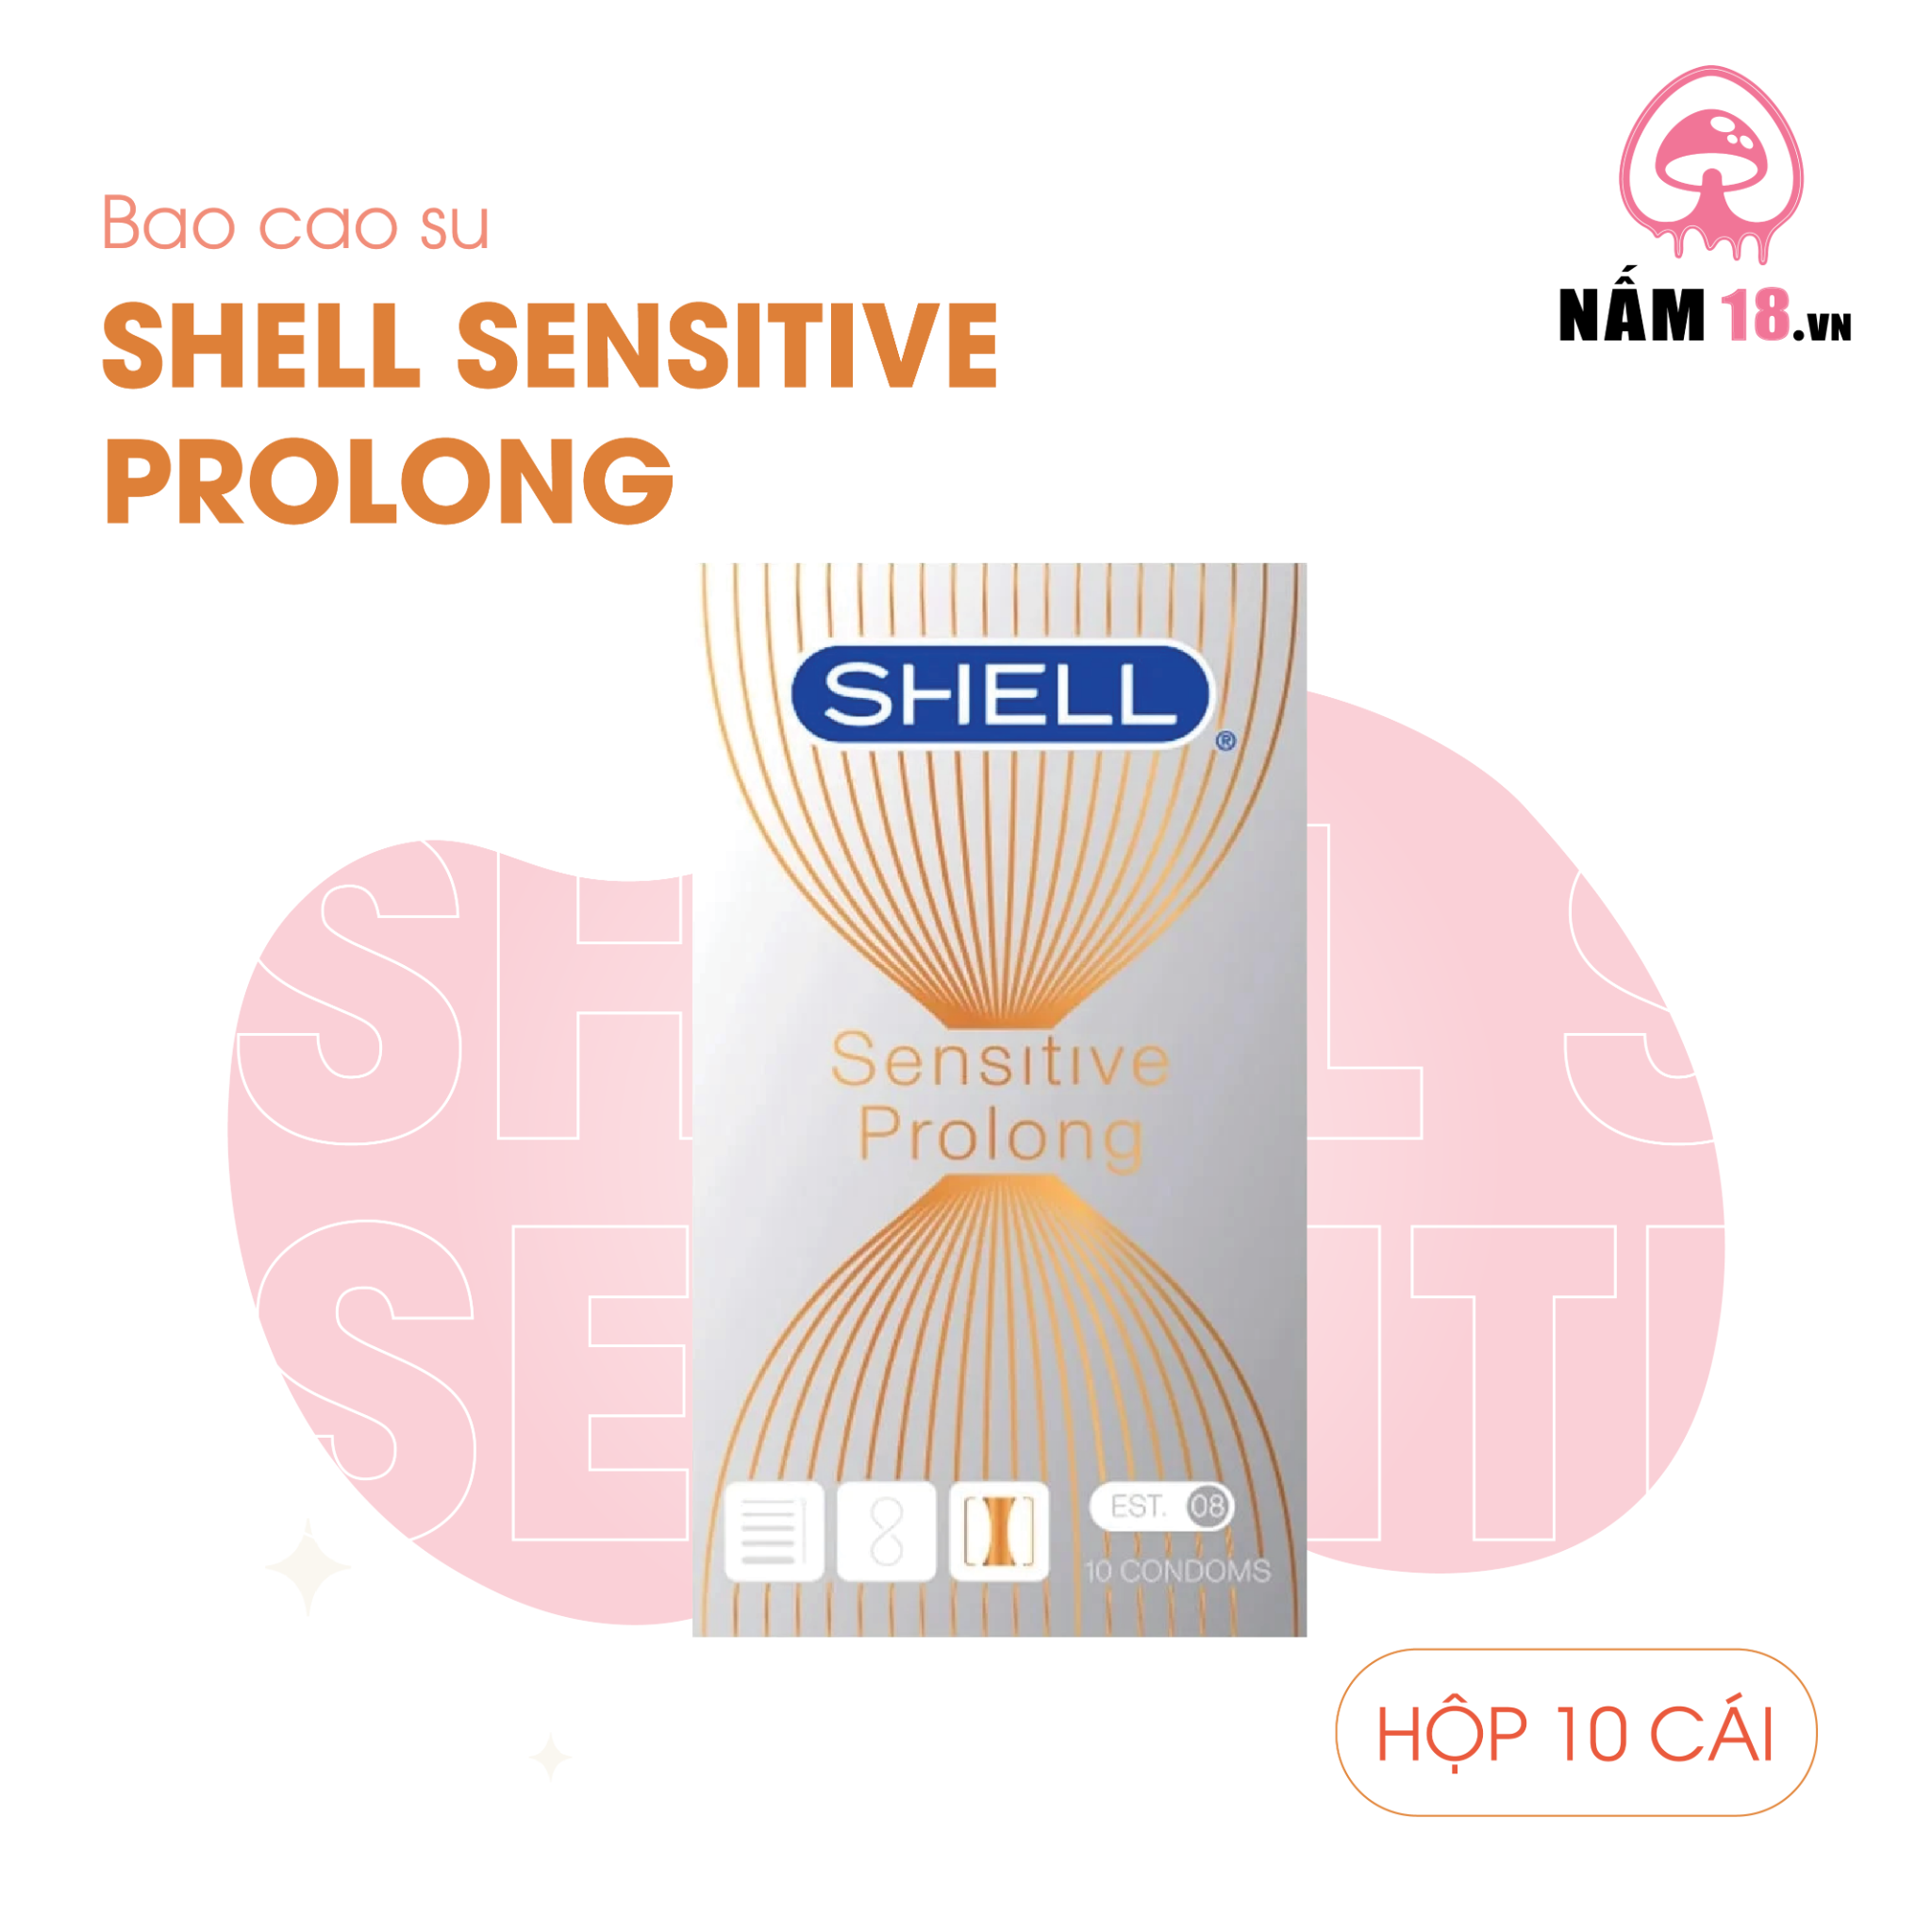  Bao cao su Shell Sensitive Prolong - Siêu mỏng 0.03mm, kéo dài thời gian - Hộp 10 cái 